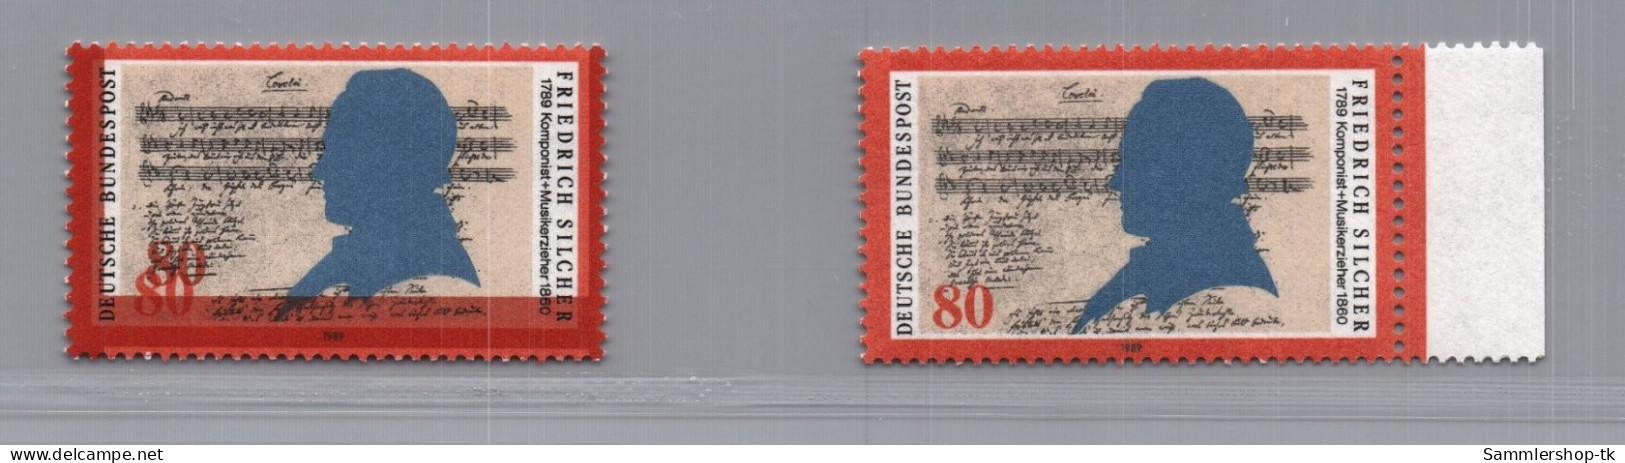 Bund Michel Nummer 1425 DD Doppeldruck (links) Mit Vergleichsmarke - Varietà E Curiosità